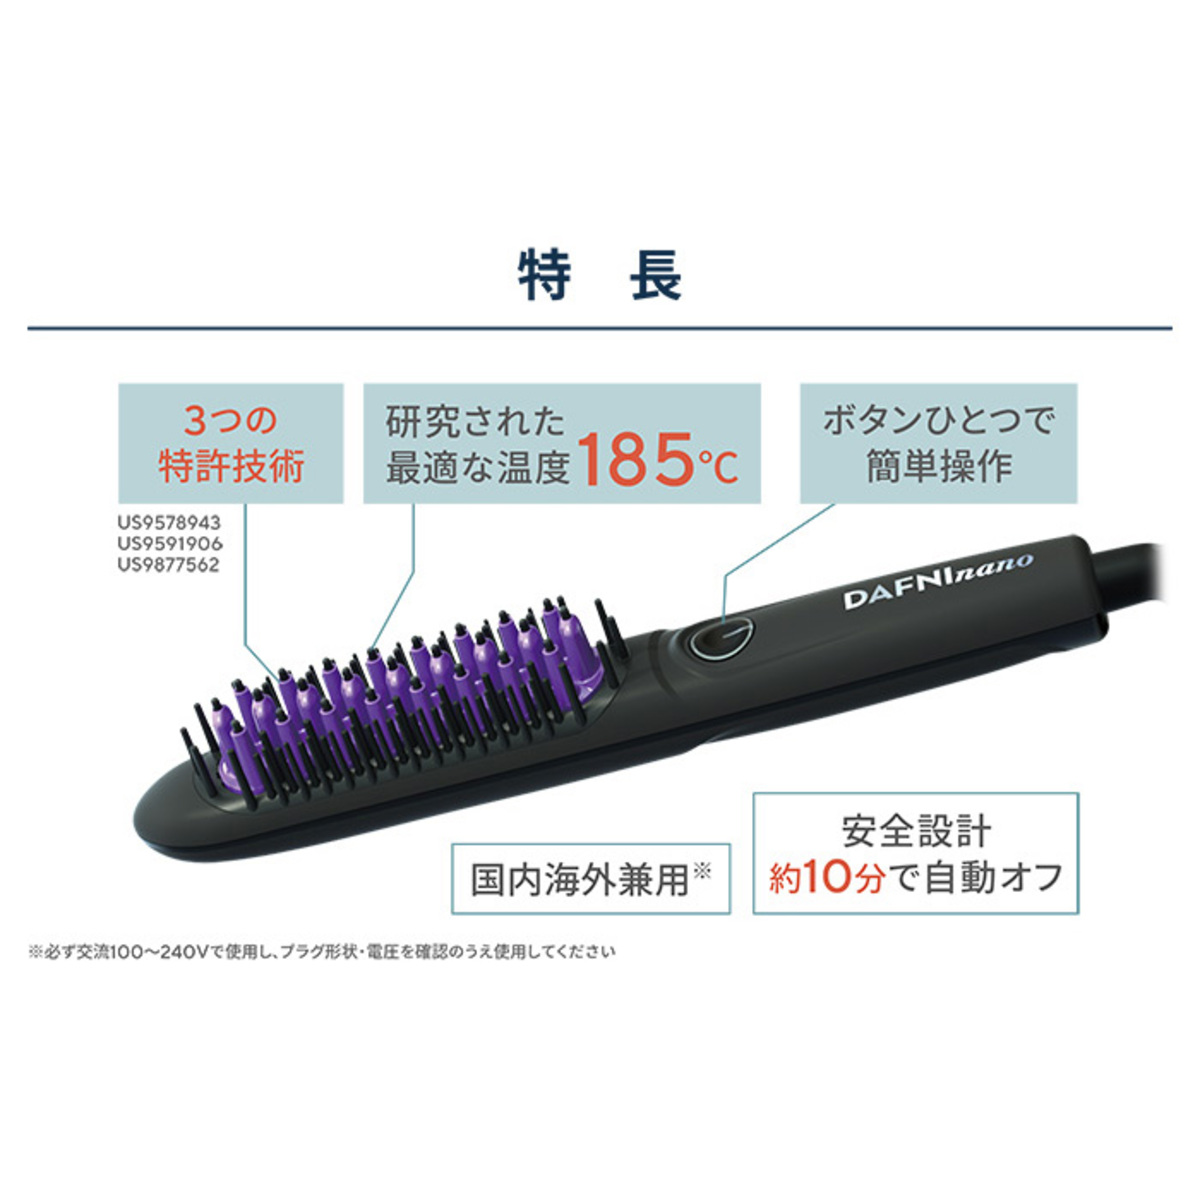 髪をとかすだけ！ブラシ型ヘアアイロン「ダフニNANO」 - QVC.jp